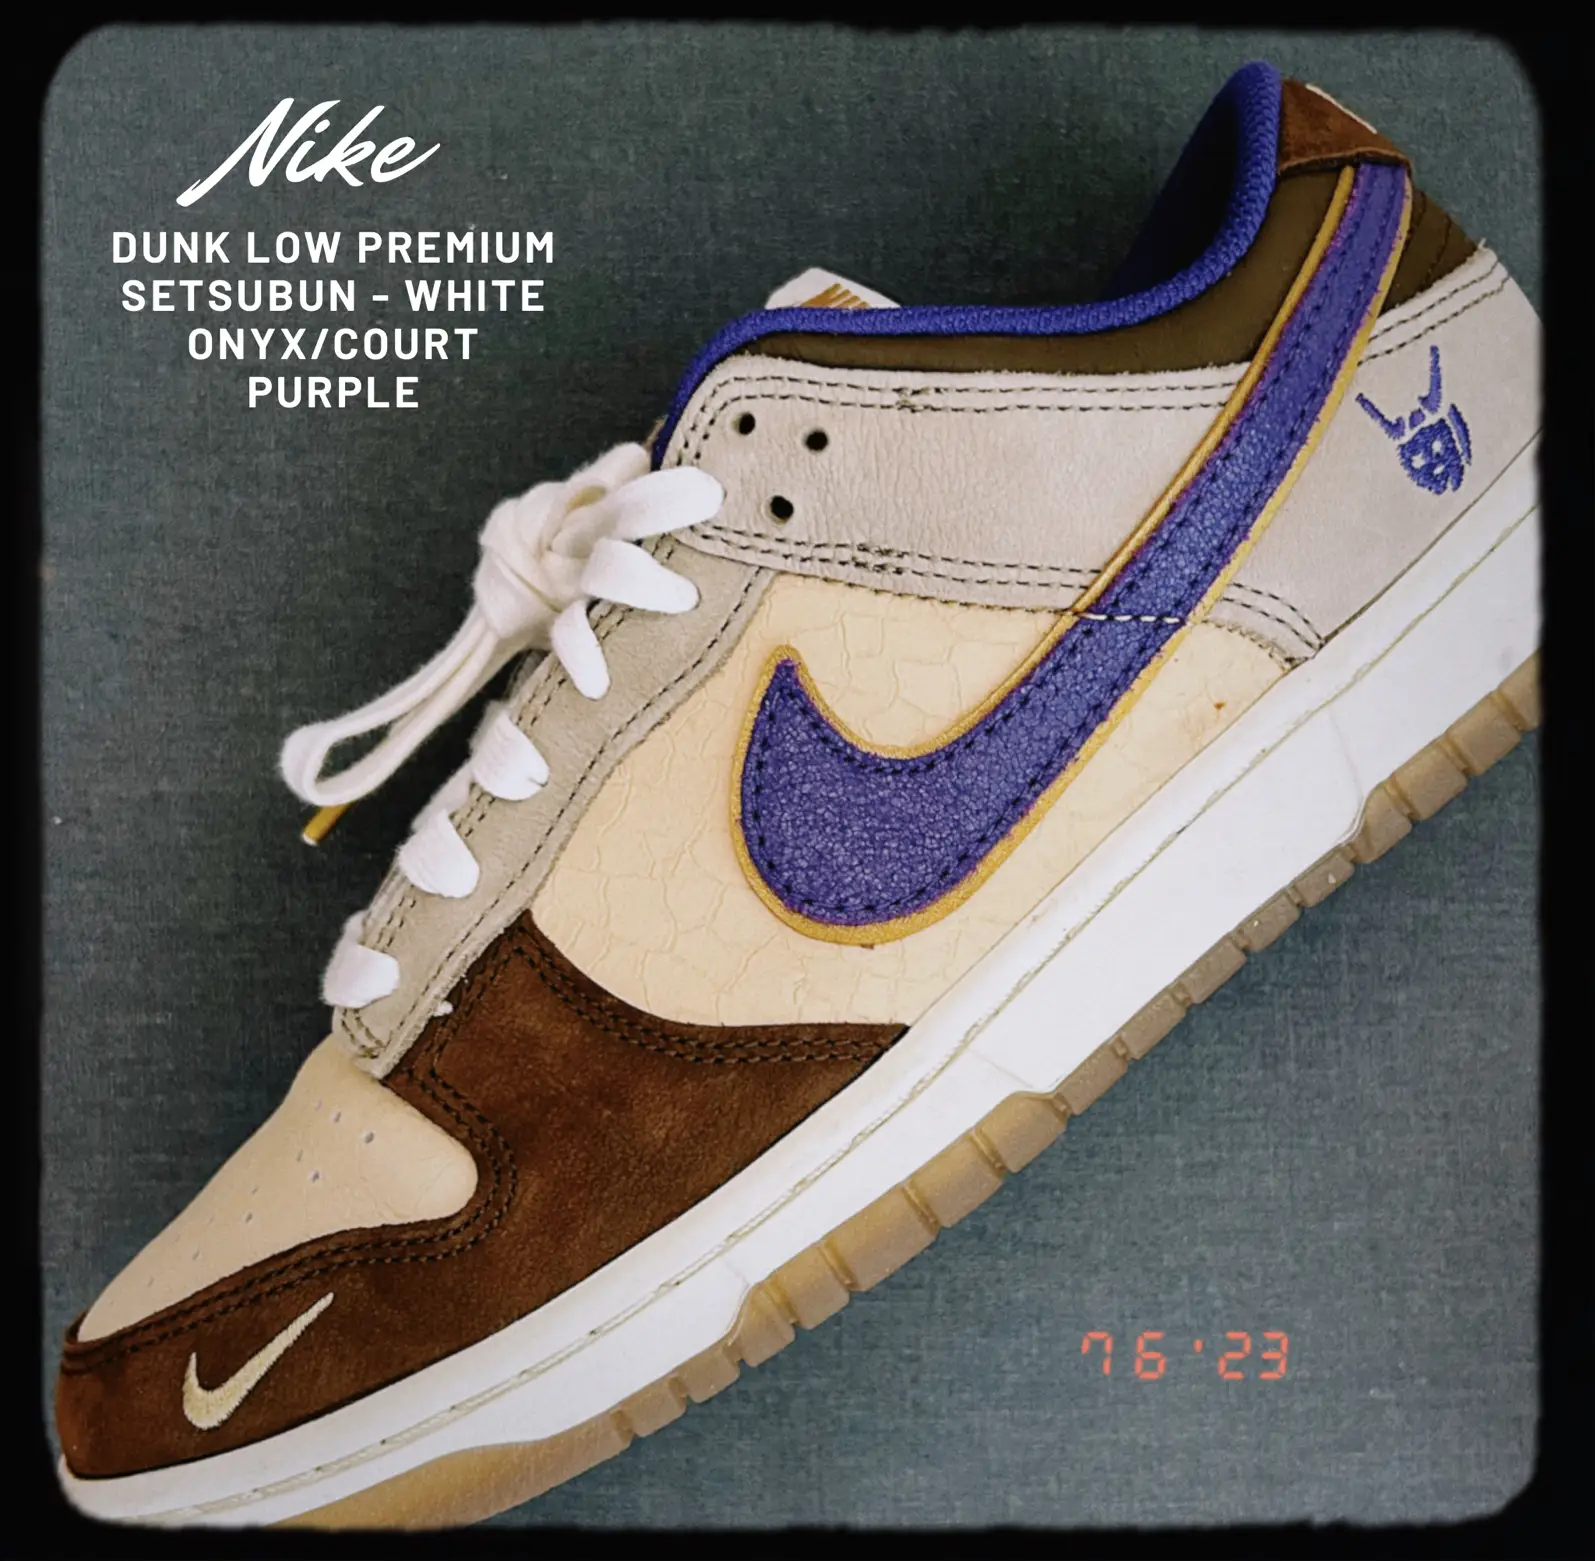 DQ5009-268 Nike Dunk Low “Setsubun” Tan/Brown-Purple 